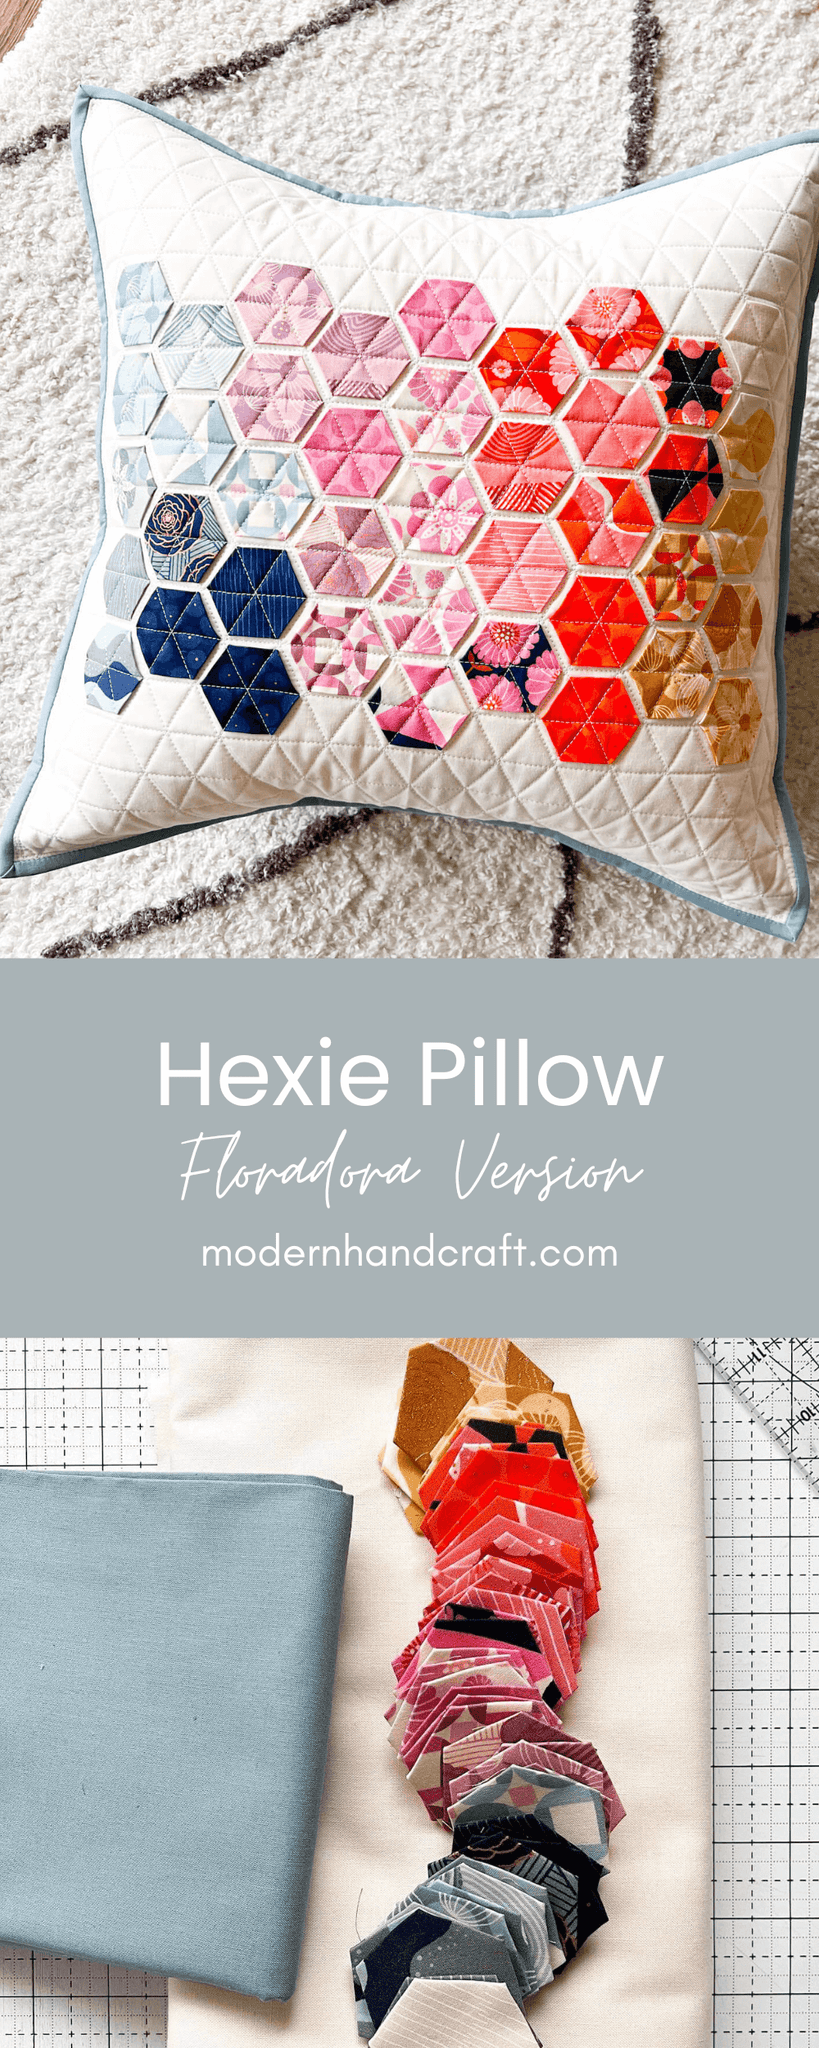 Hexie Pillow - Floradora Version by Modern Handcraft